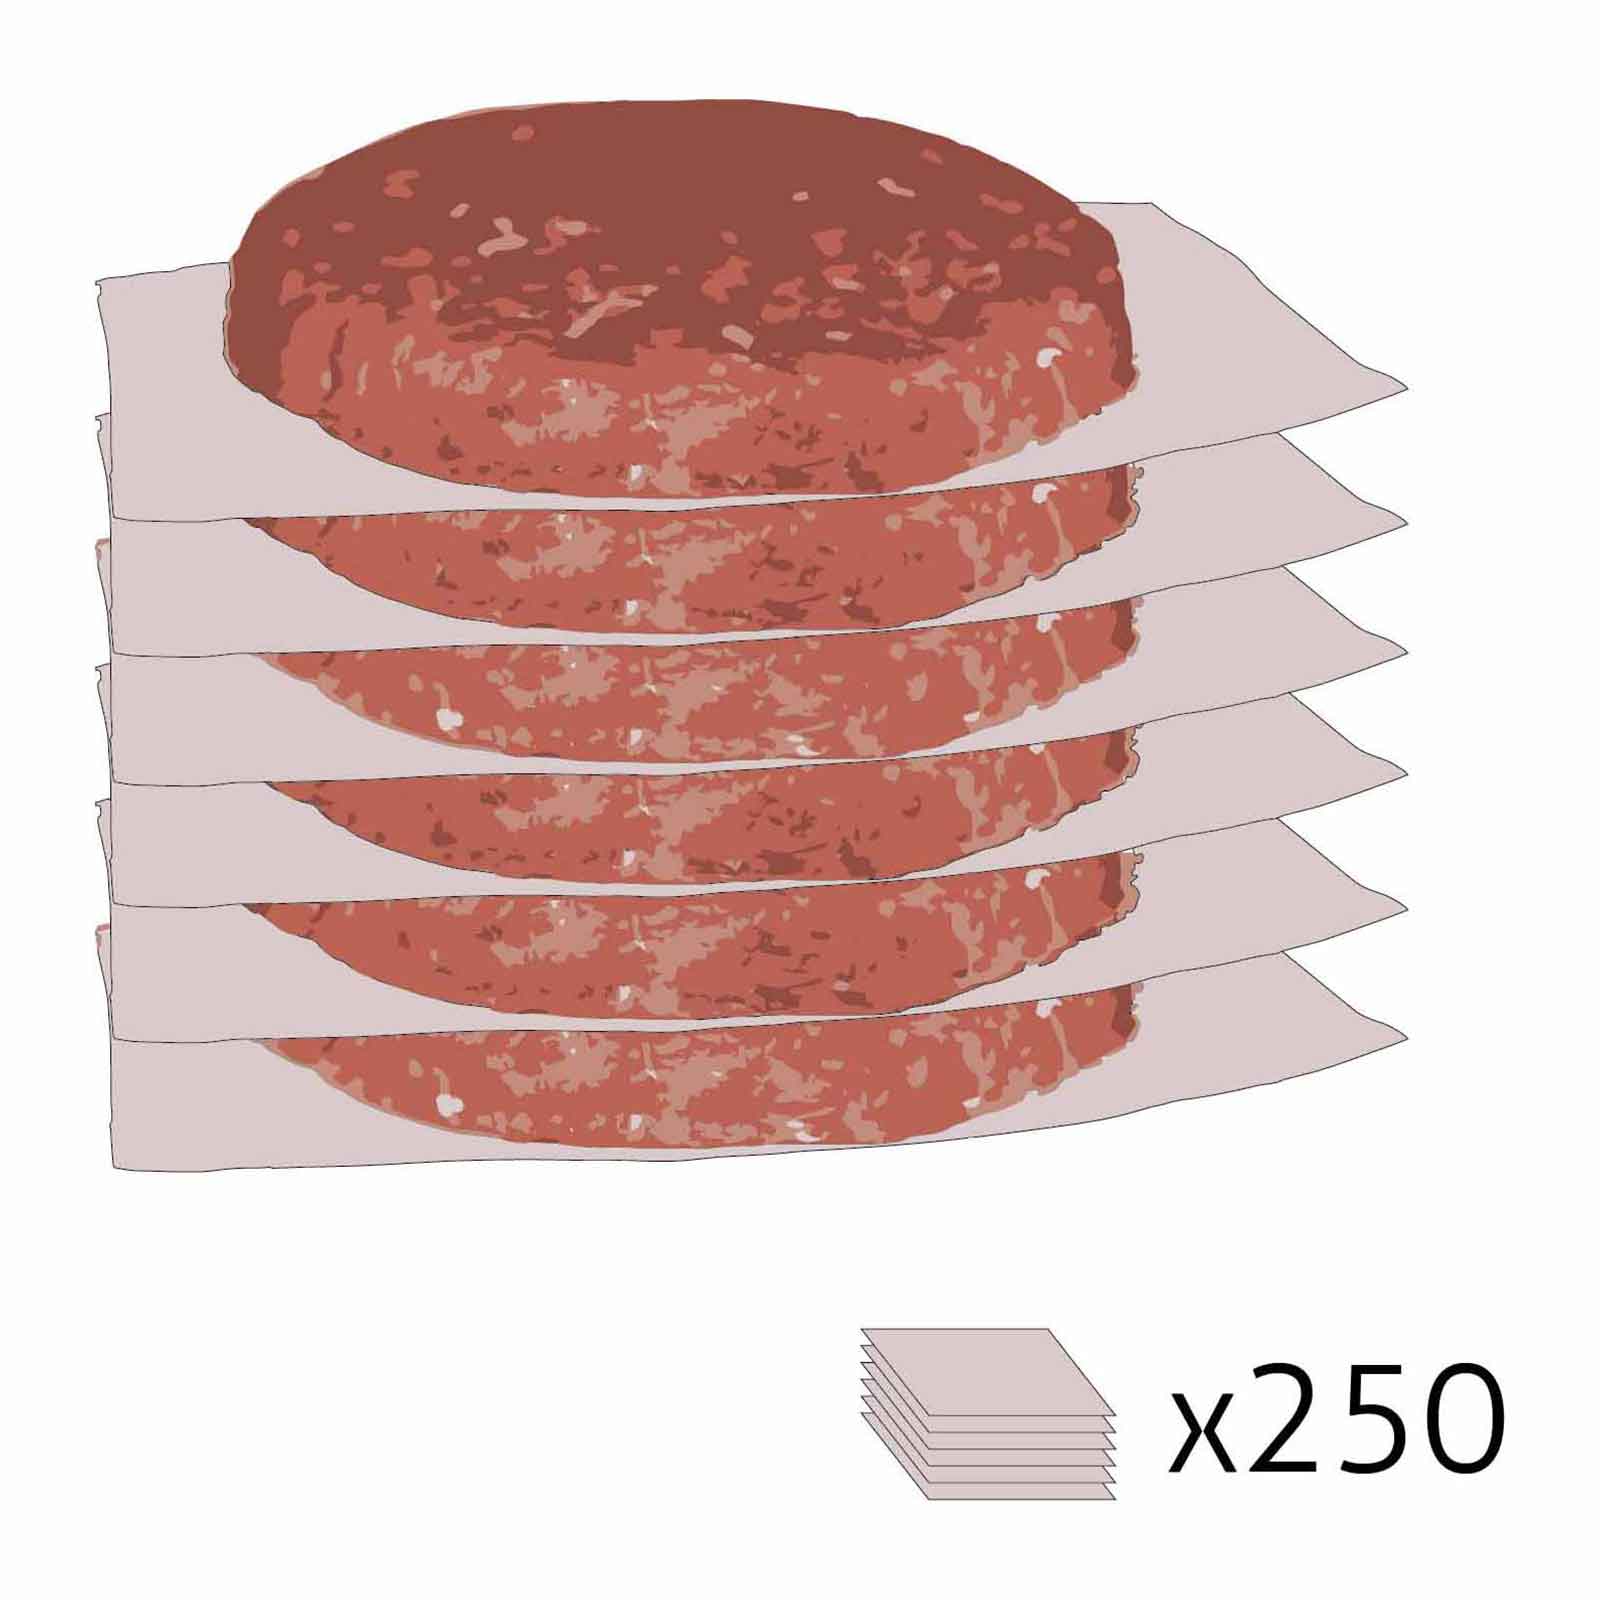 Papierzwischenlagen für Burger 250 Stk.